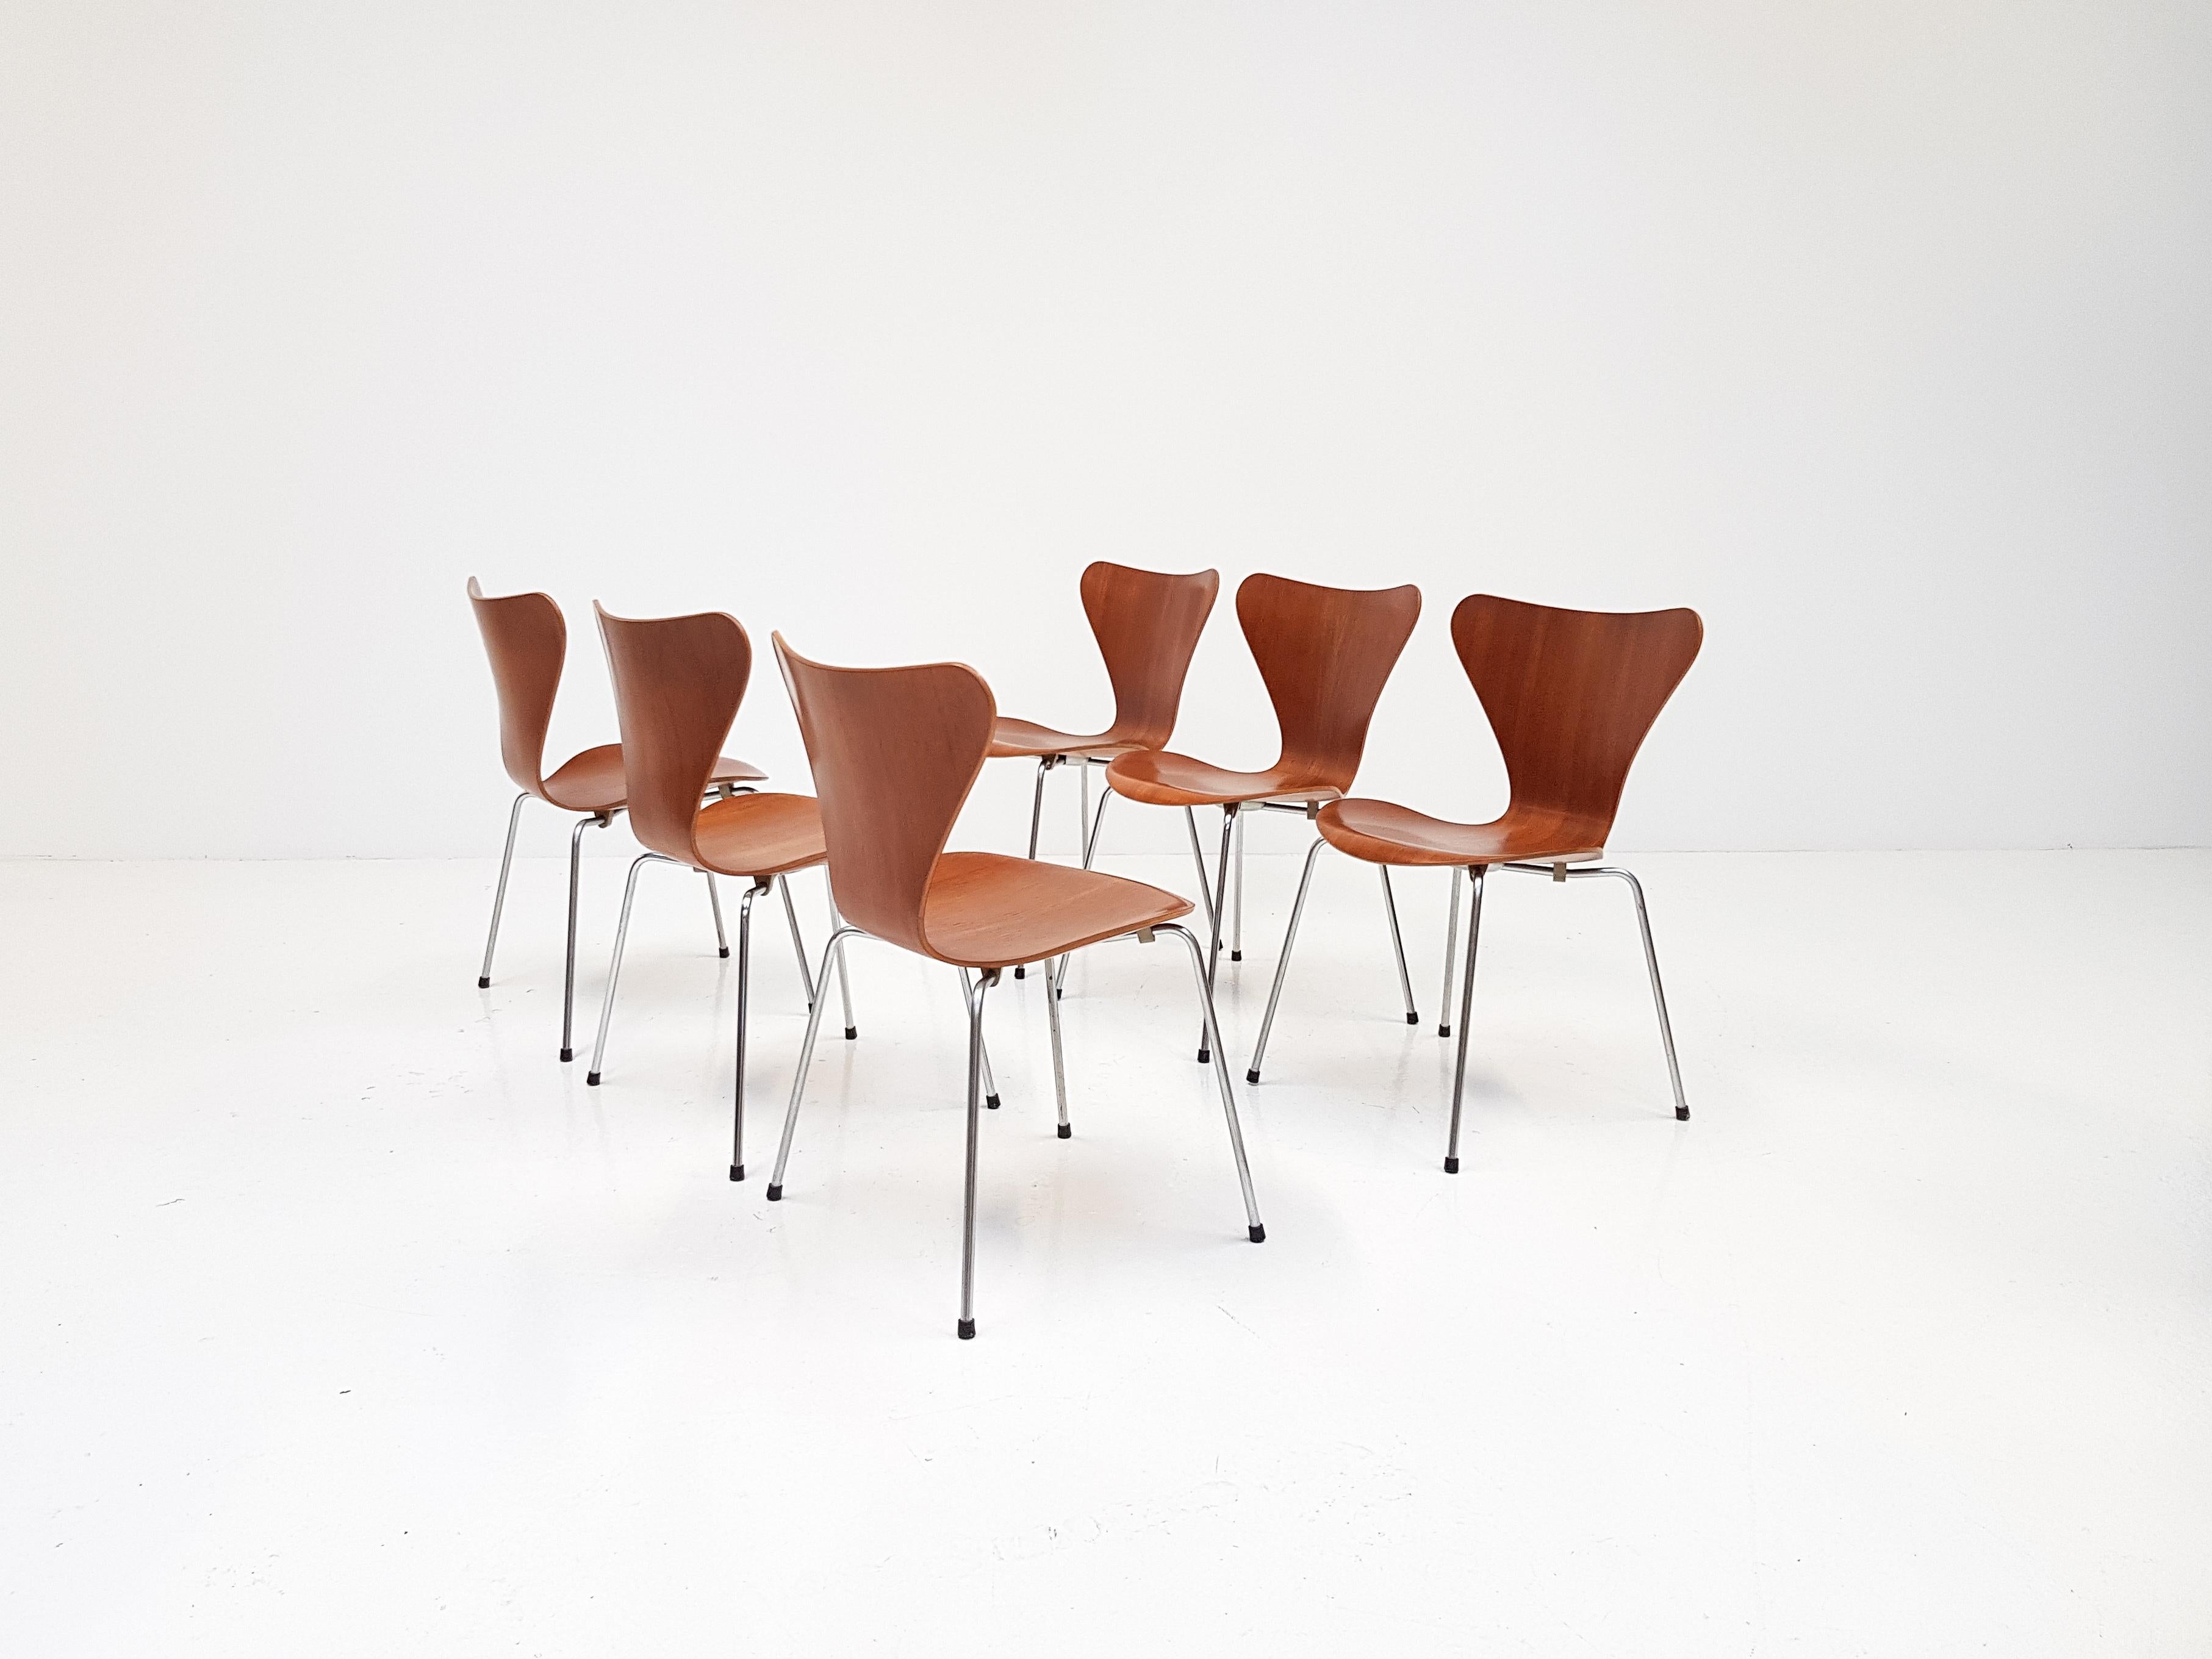 A set of 6x Arne Jacobsen 